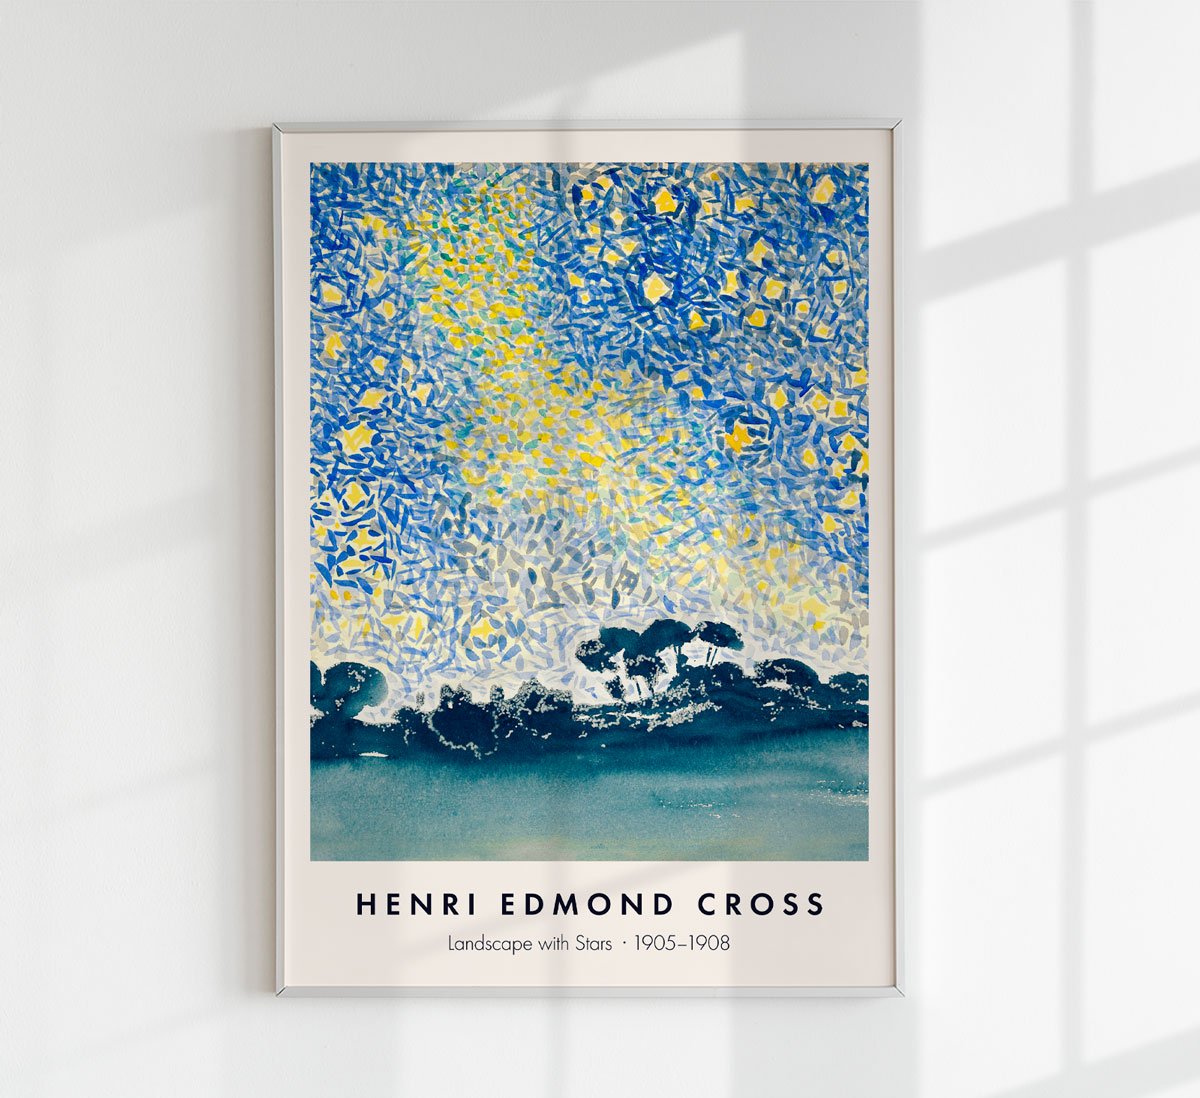 Landscape with Stars by Henri Edmond Cross